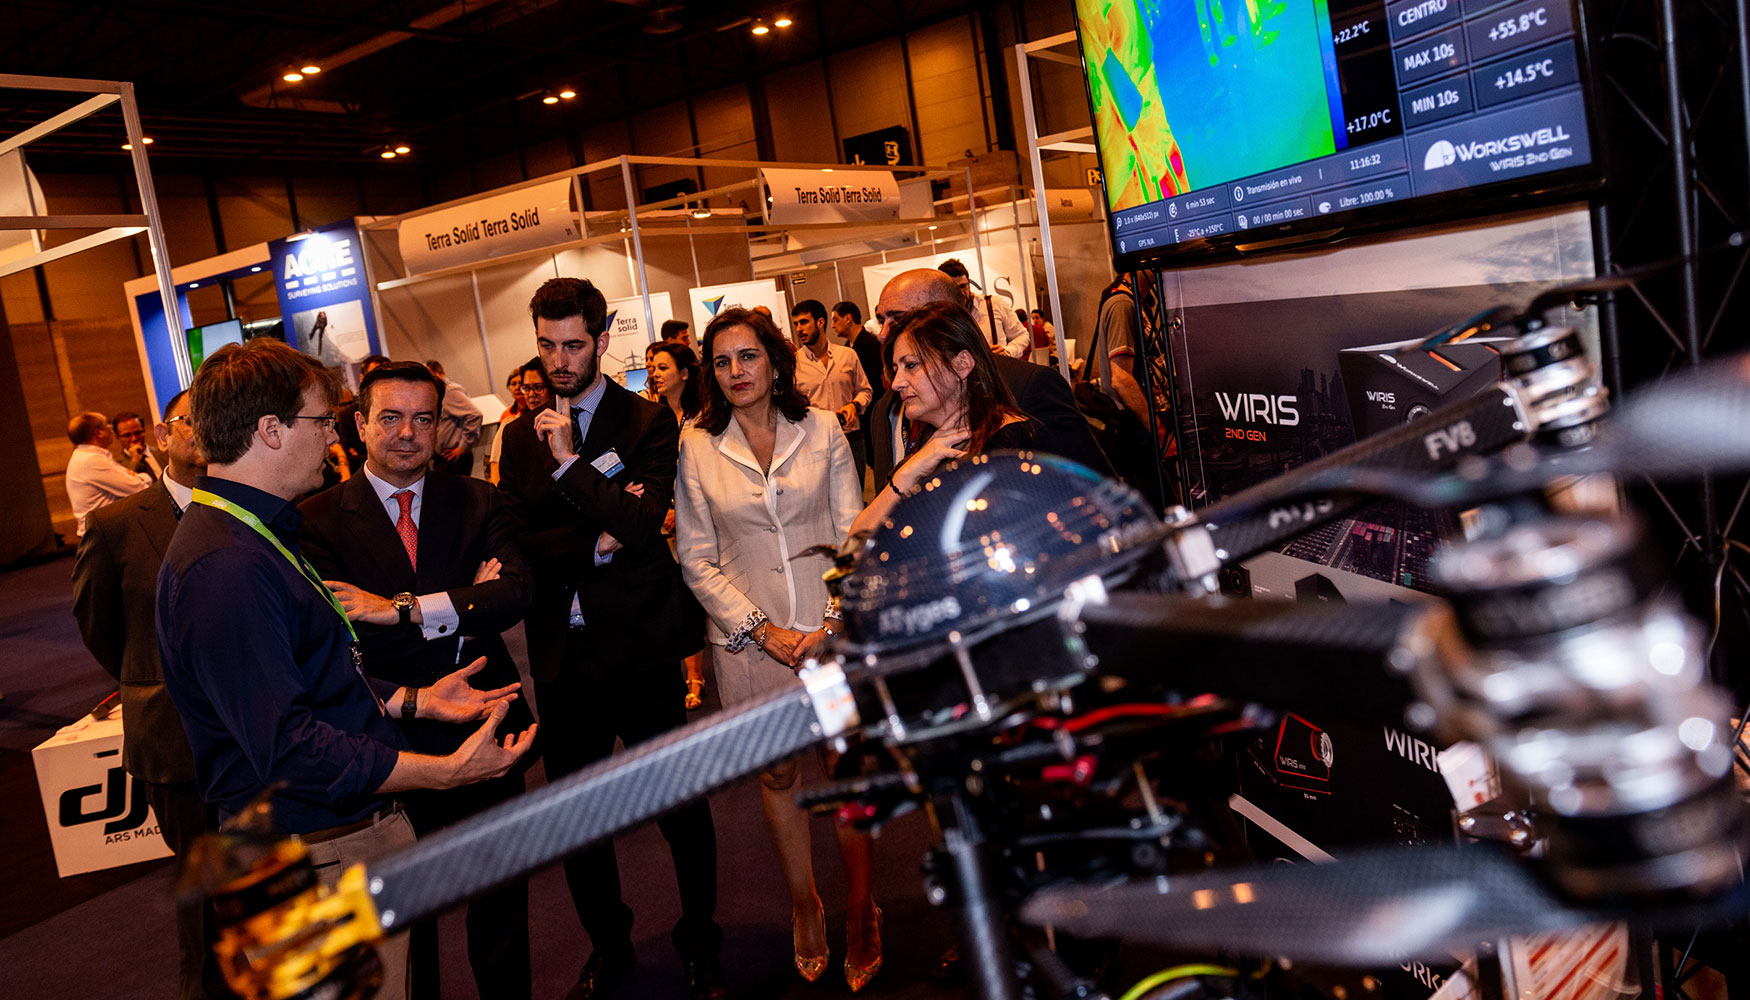 Expodrnica albergar el primer World Drone Forum, la gran novedad de la edicin de 2019